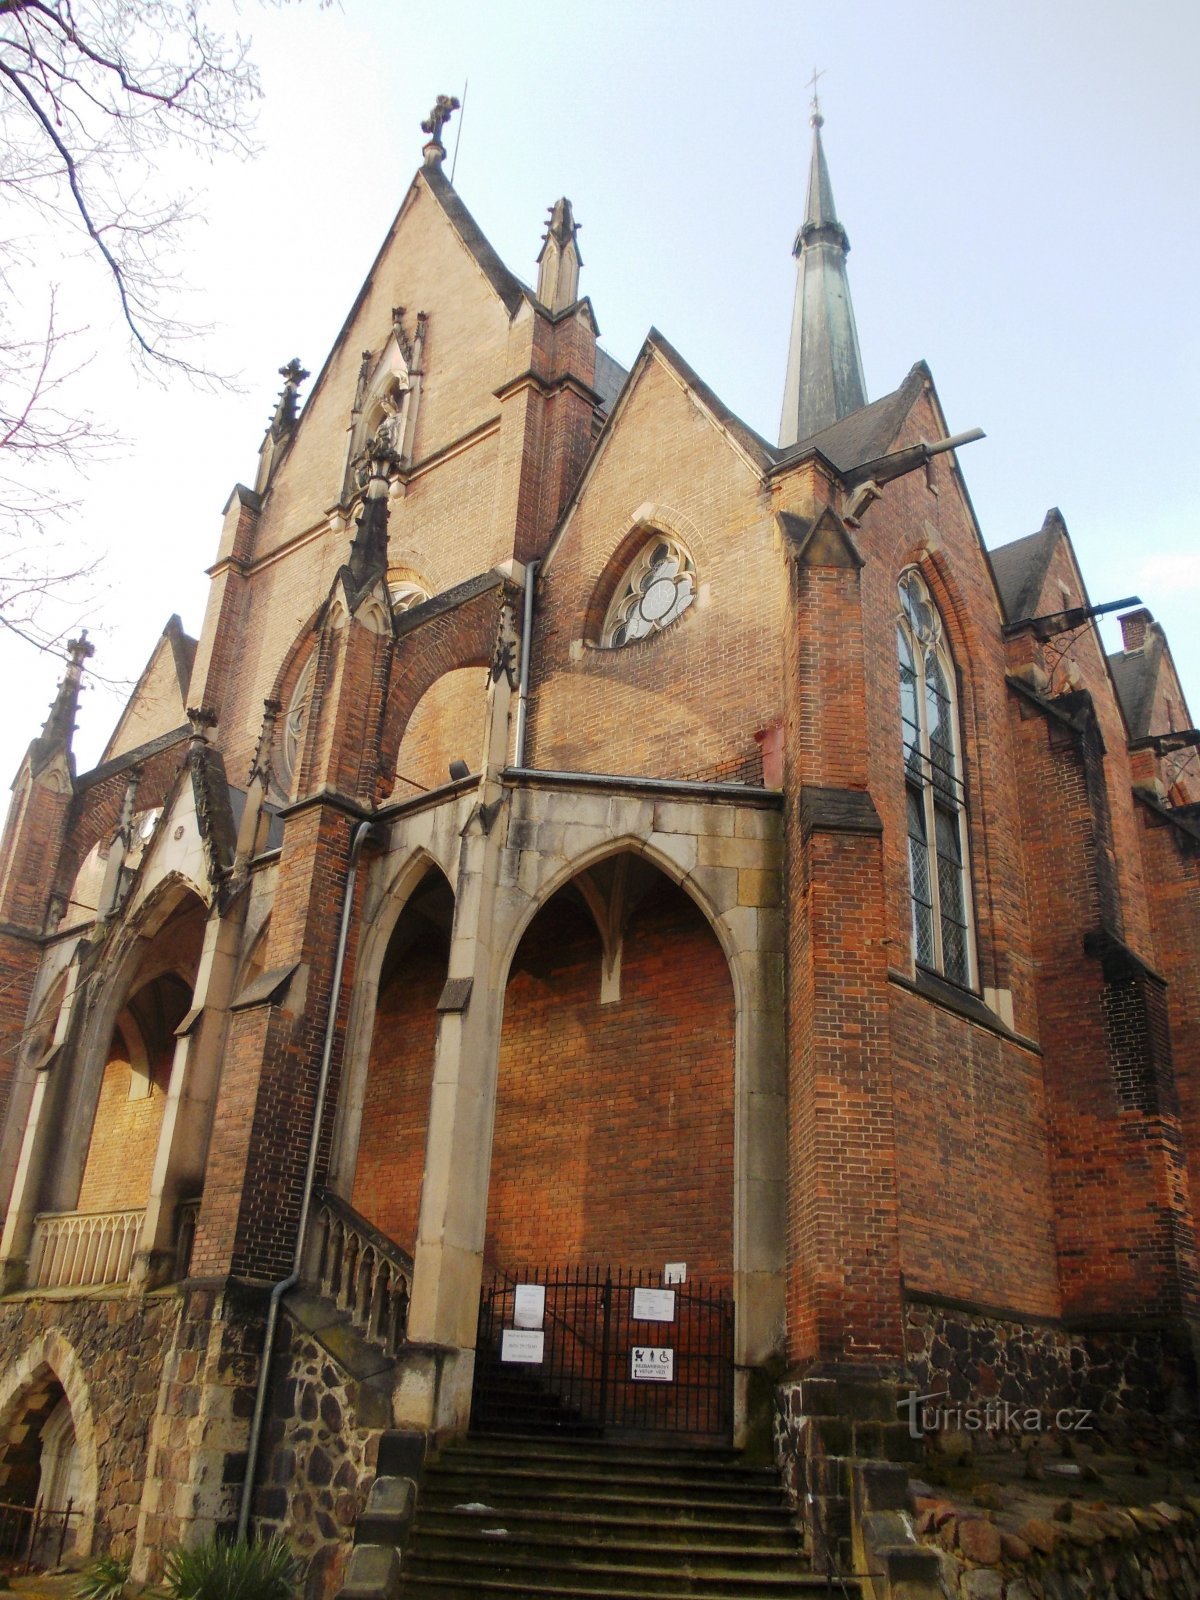 facade of the church